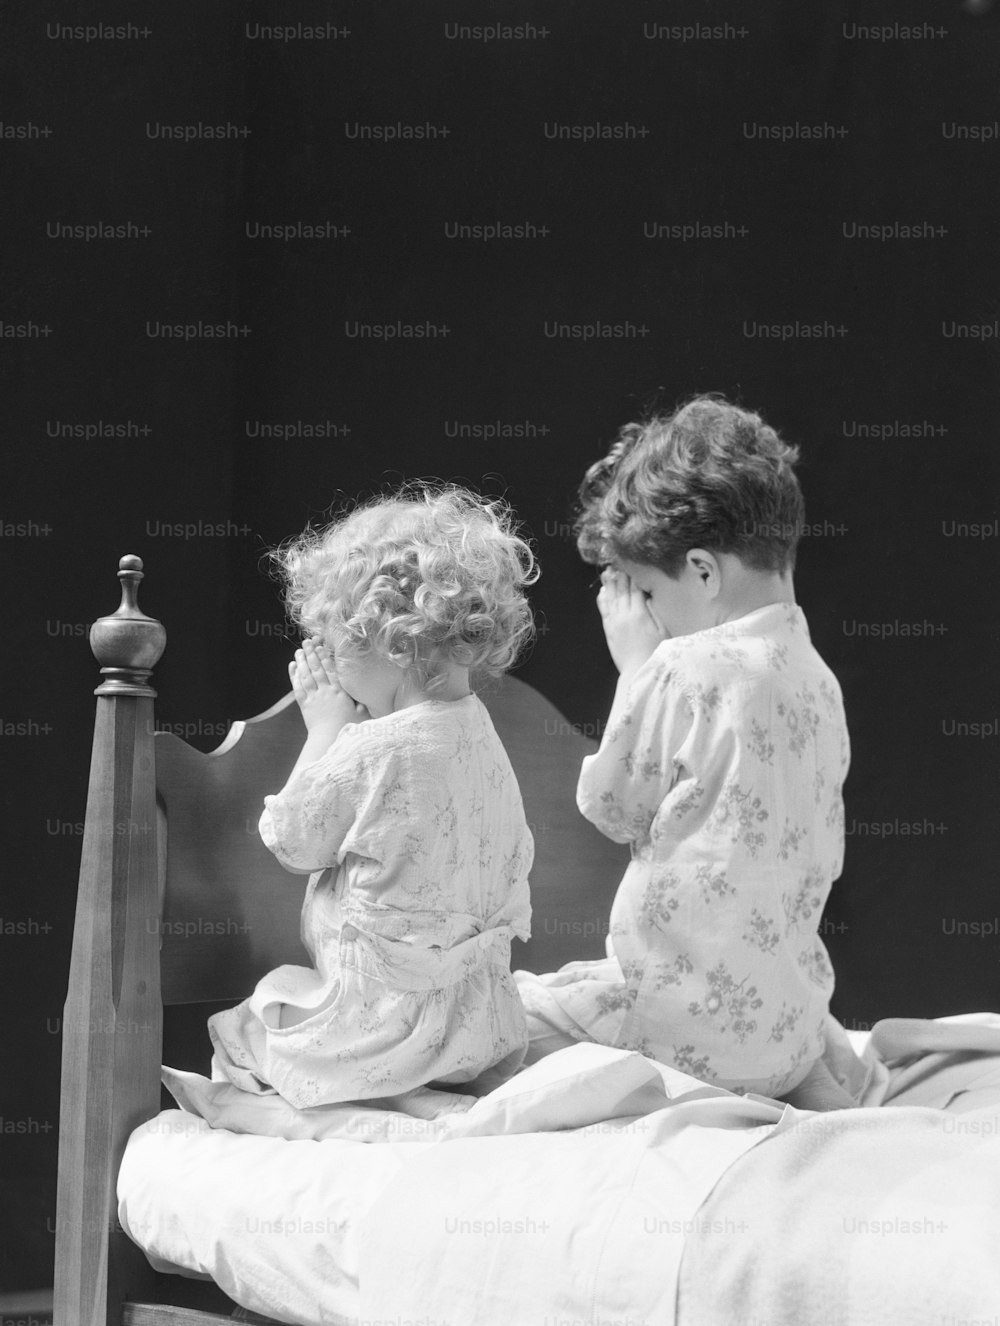 STATI UNITI - 1930 CIRCA: Ragazzo e ragazza inginocchiati vicino al letto che pregano, vista posteriore.